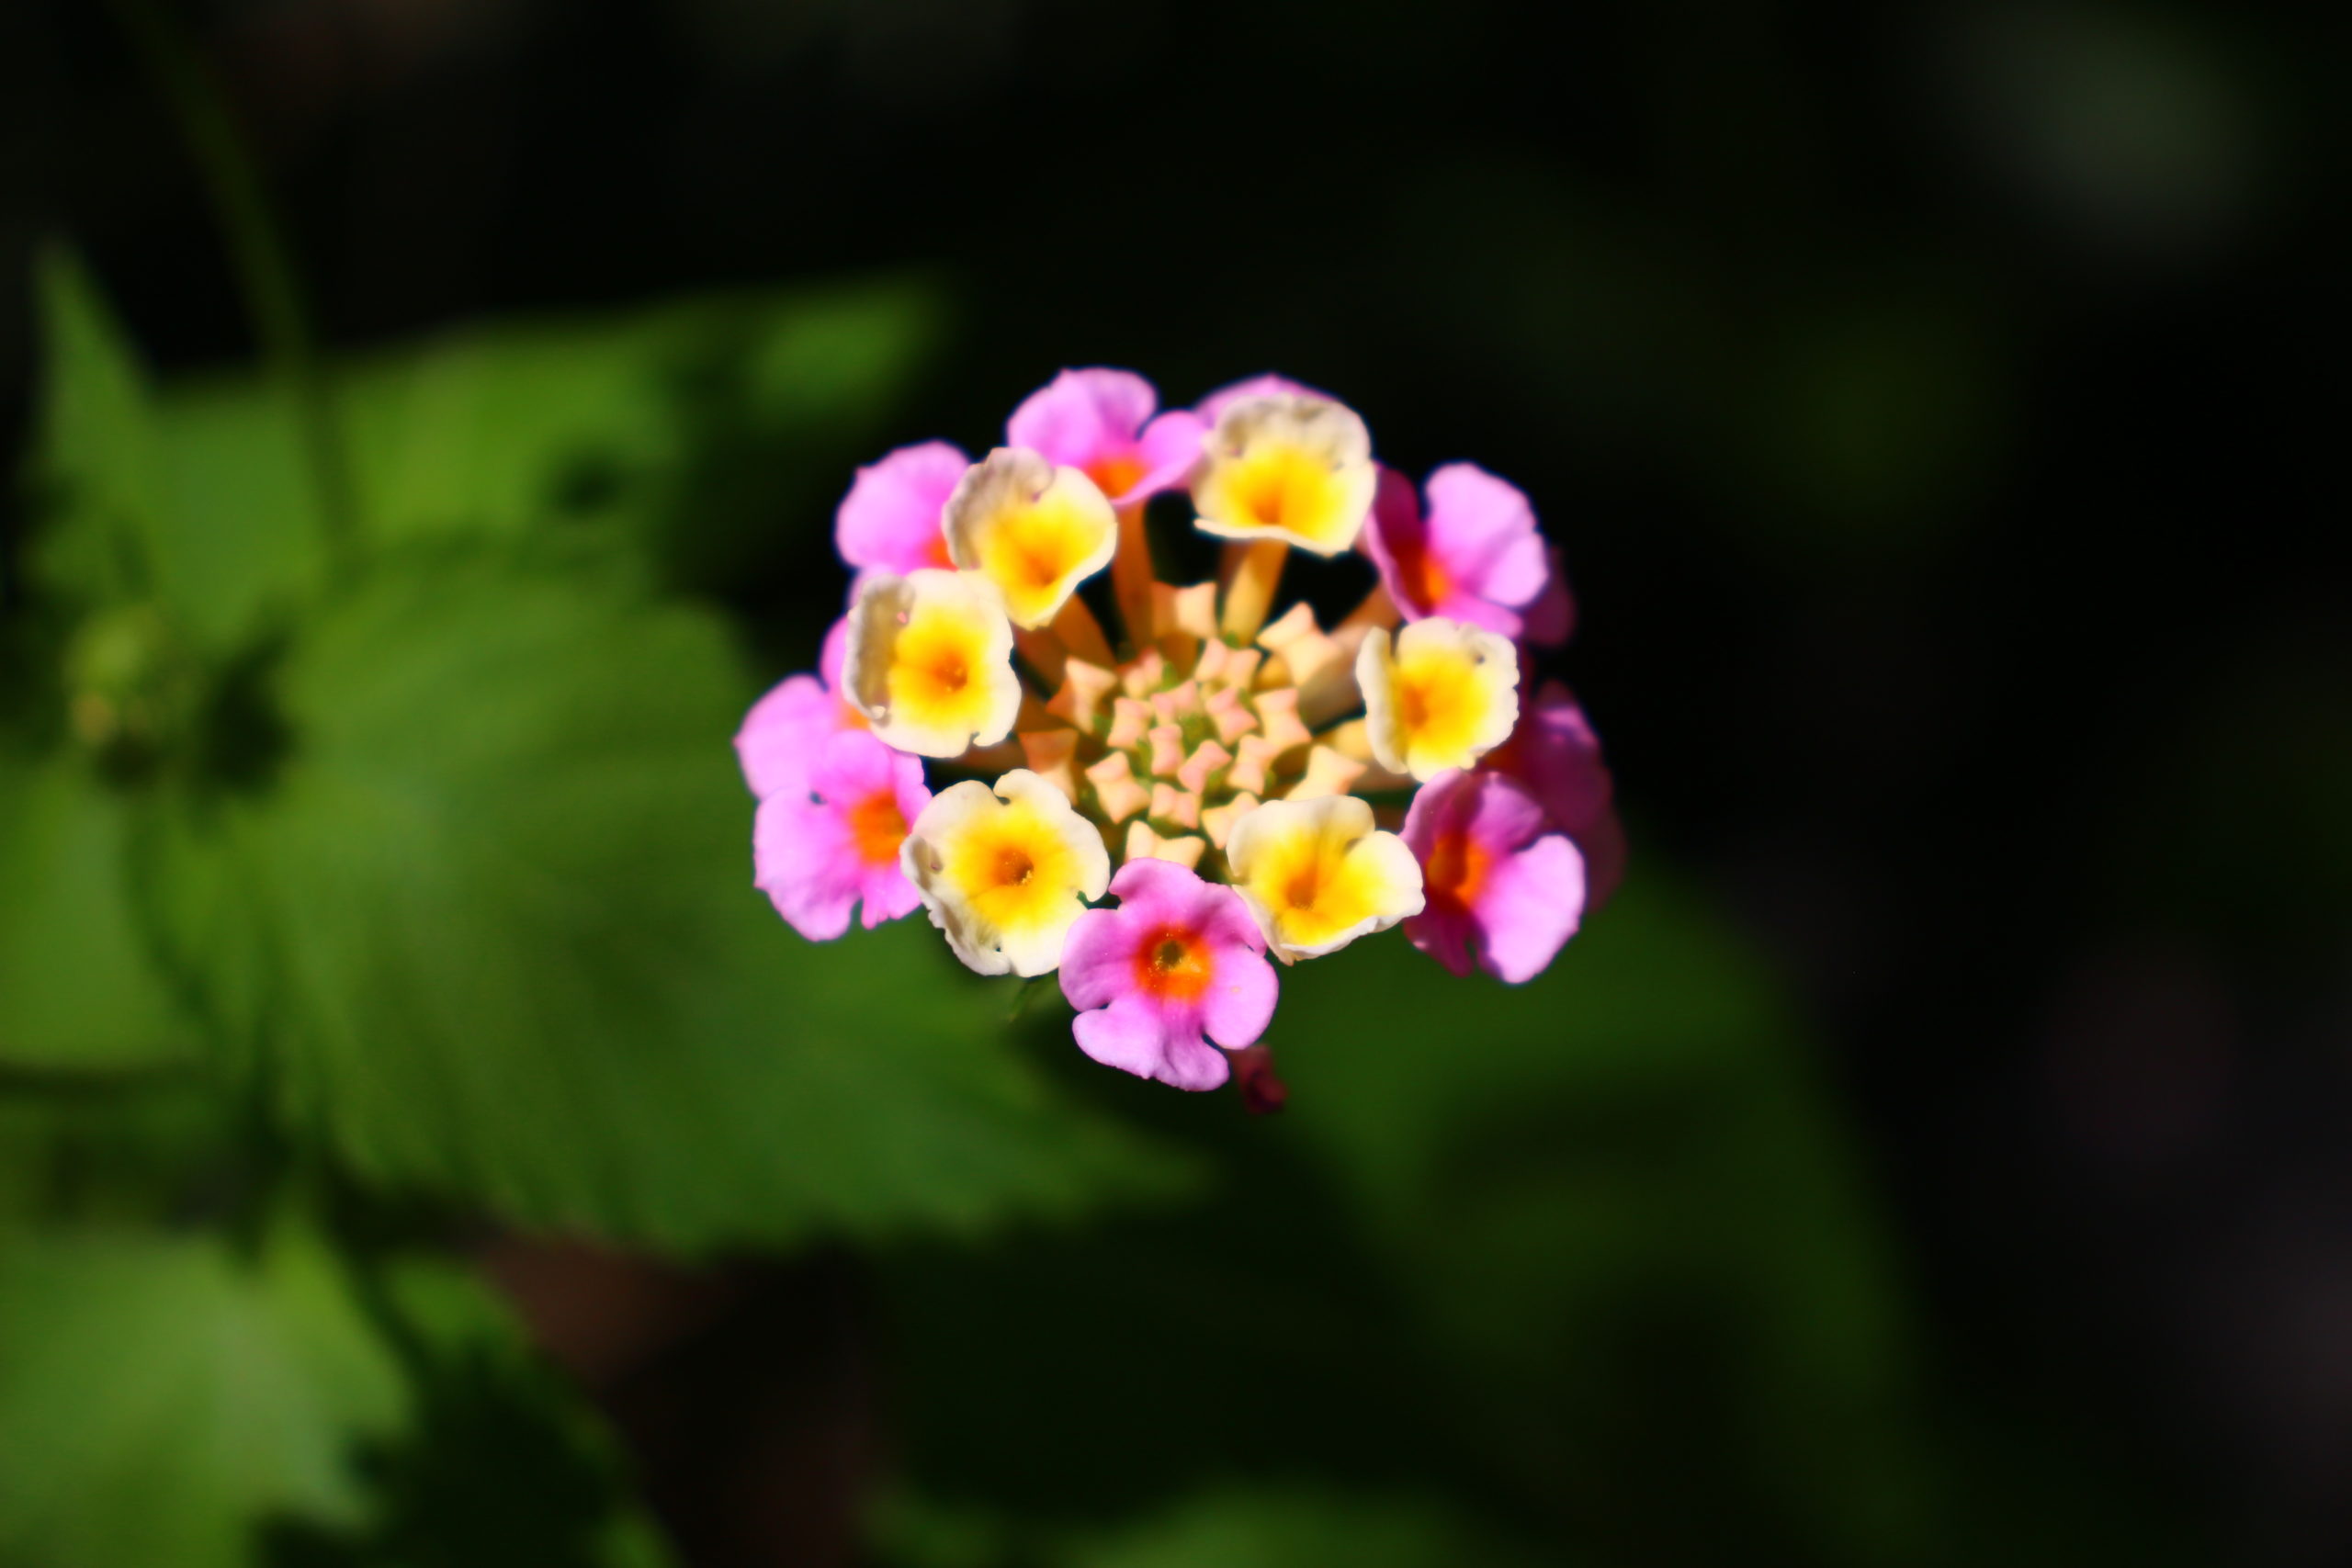 真夏の花といえば 七変化 ランタナ の育て方総チェック 増えすぎ 育ち過ぎに注意 情熱庭園